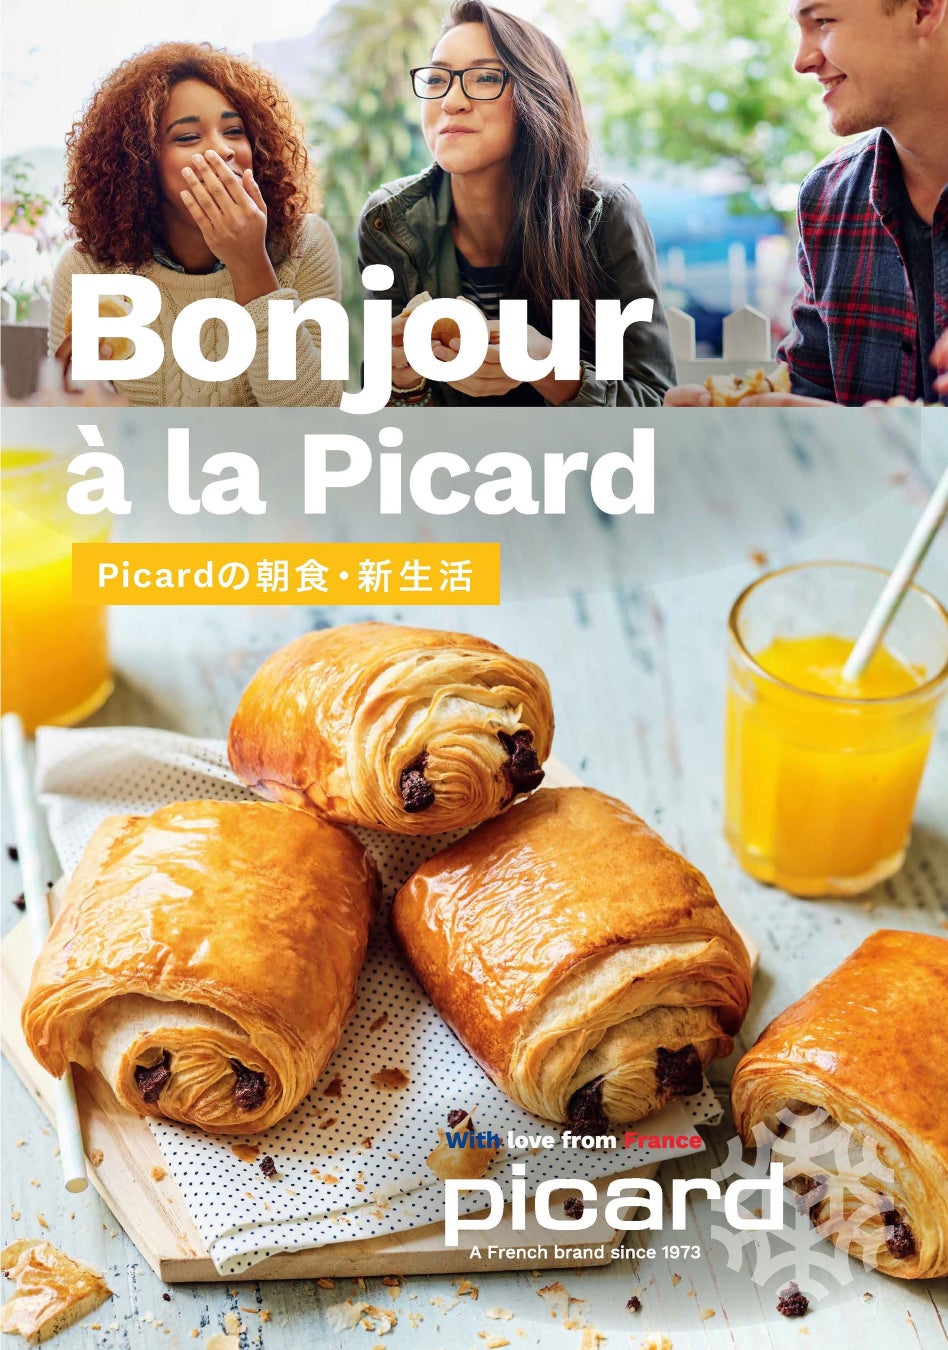 【冷凍食品専門店Picard】4月のテーマは“Bonjour à la picard”簡単調理で満足感たっぷり“Picardの朝食・新生活”をご提案